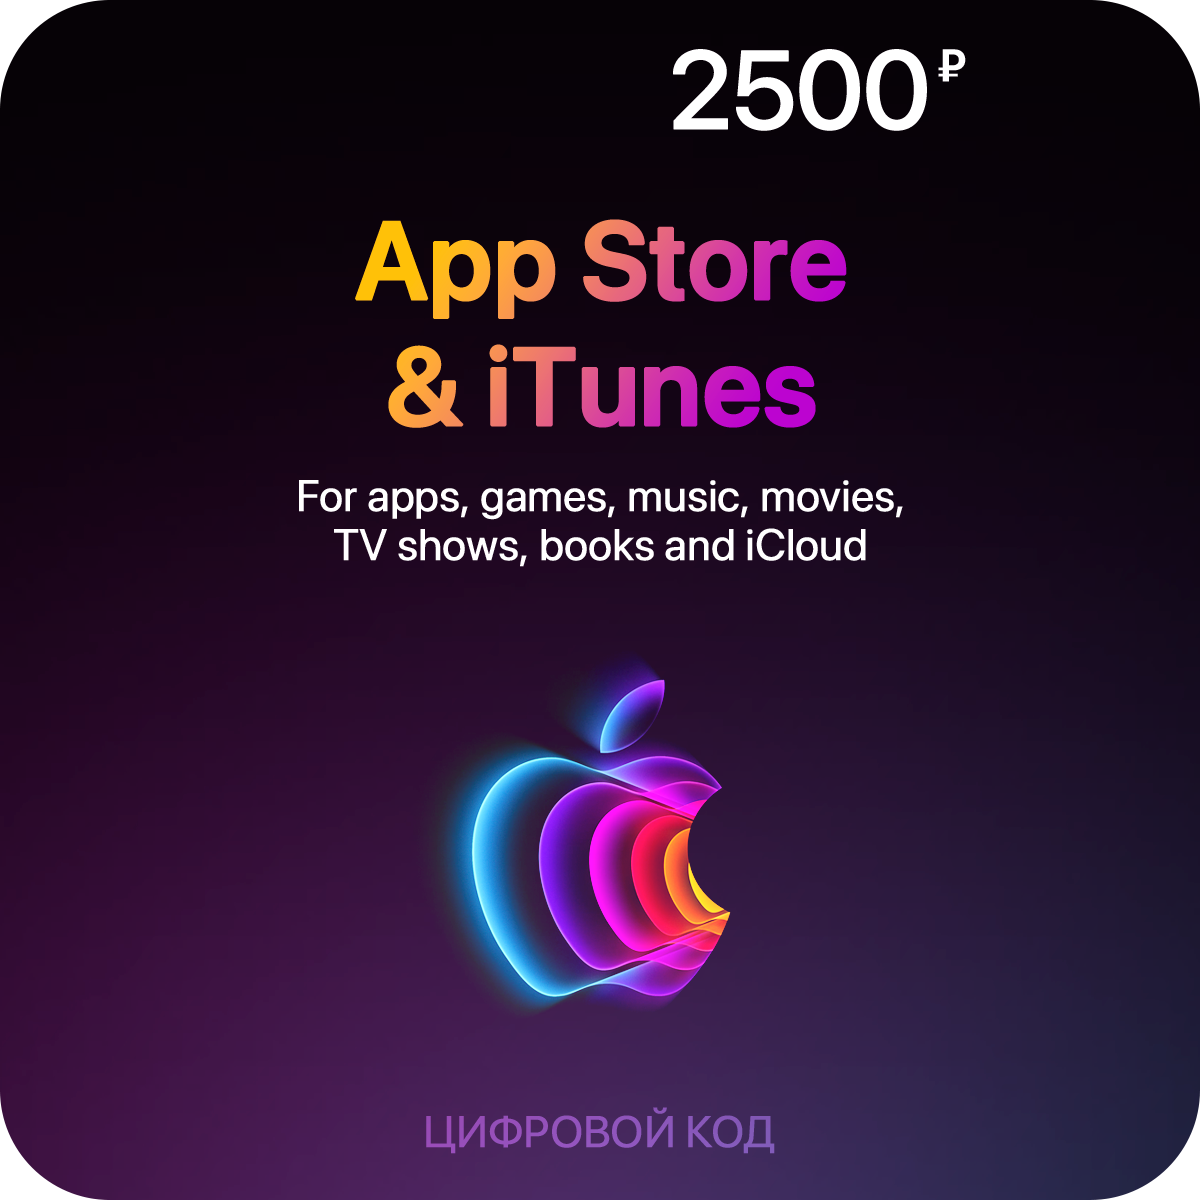 Пополнение счета App Store & iTunes (2500 рублей)